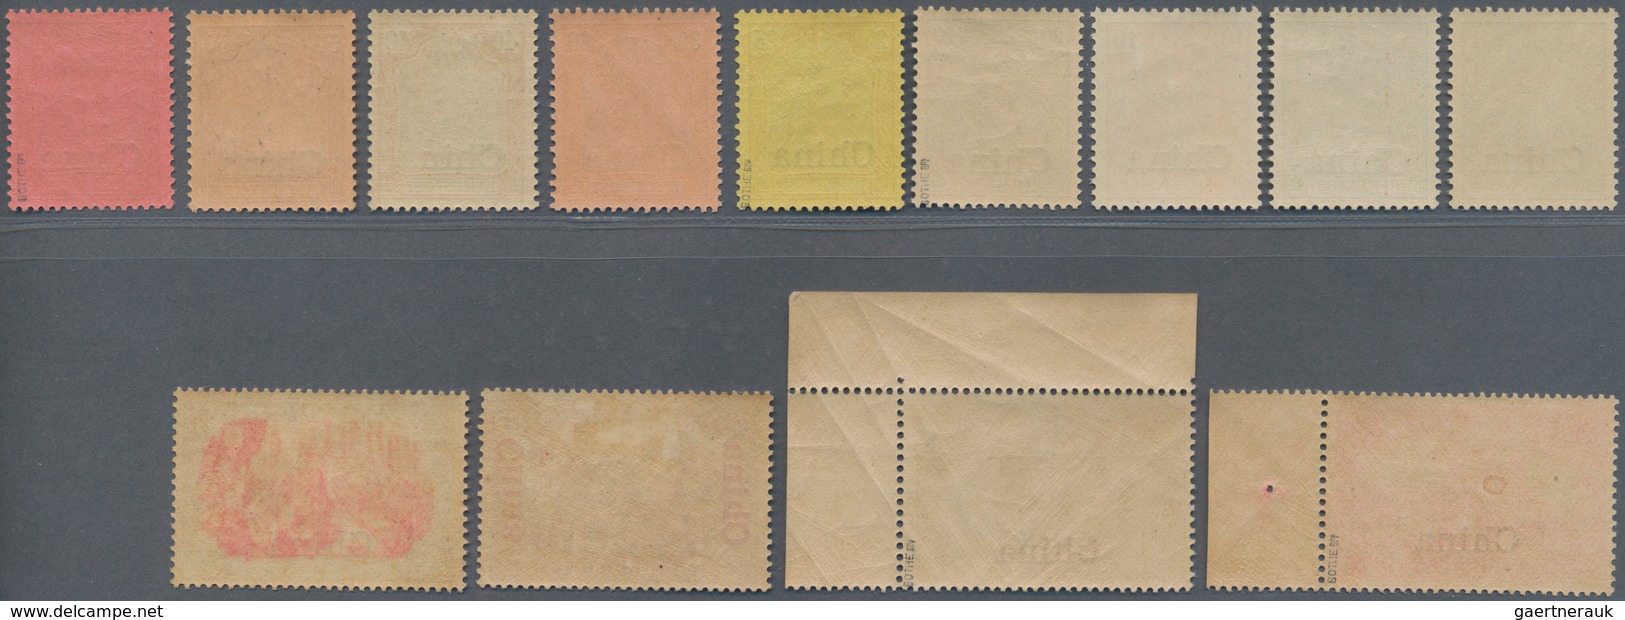 Deutsche Post In China: 1901, Germania Reichspost, 3 Pfg. Bis 5 Mark, Komplette Serie Von 13 Werten, - China (offices)